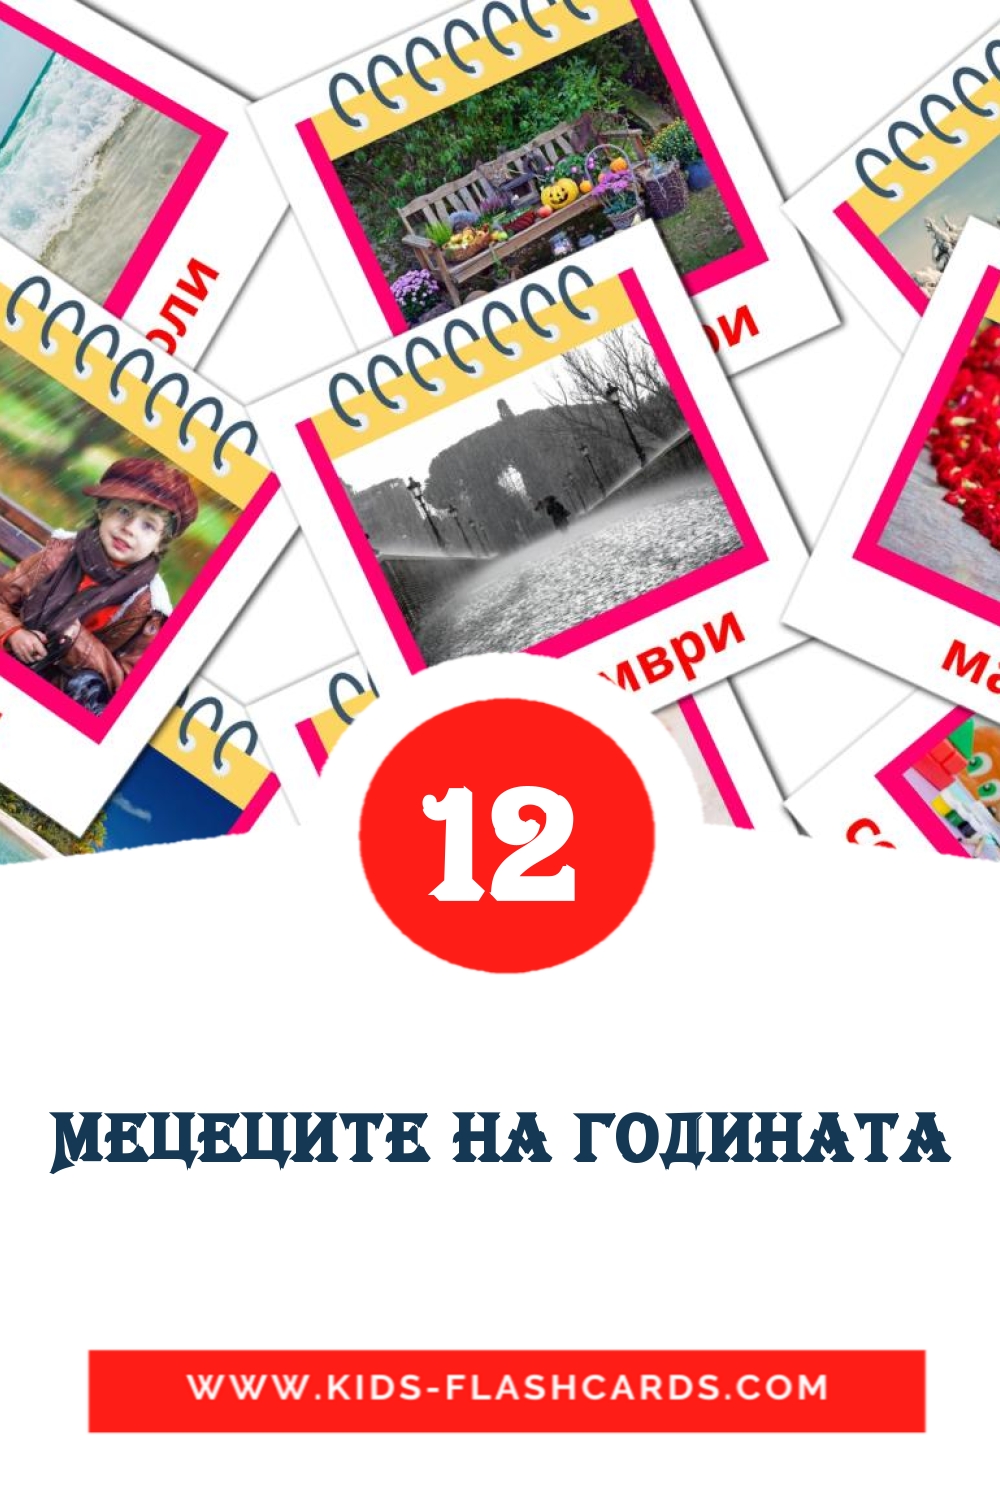 12 Мецеците на годината Bildkarten für den Kindergarten auf Bulgarisch